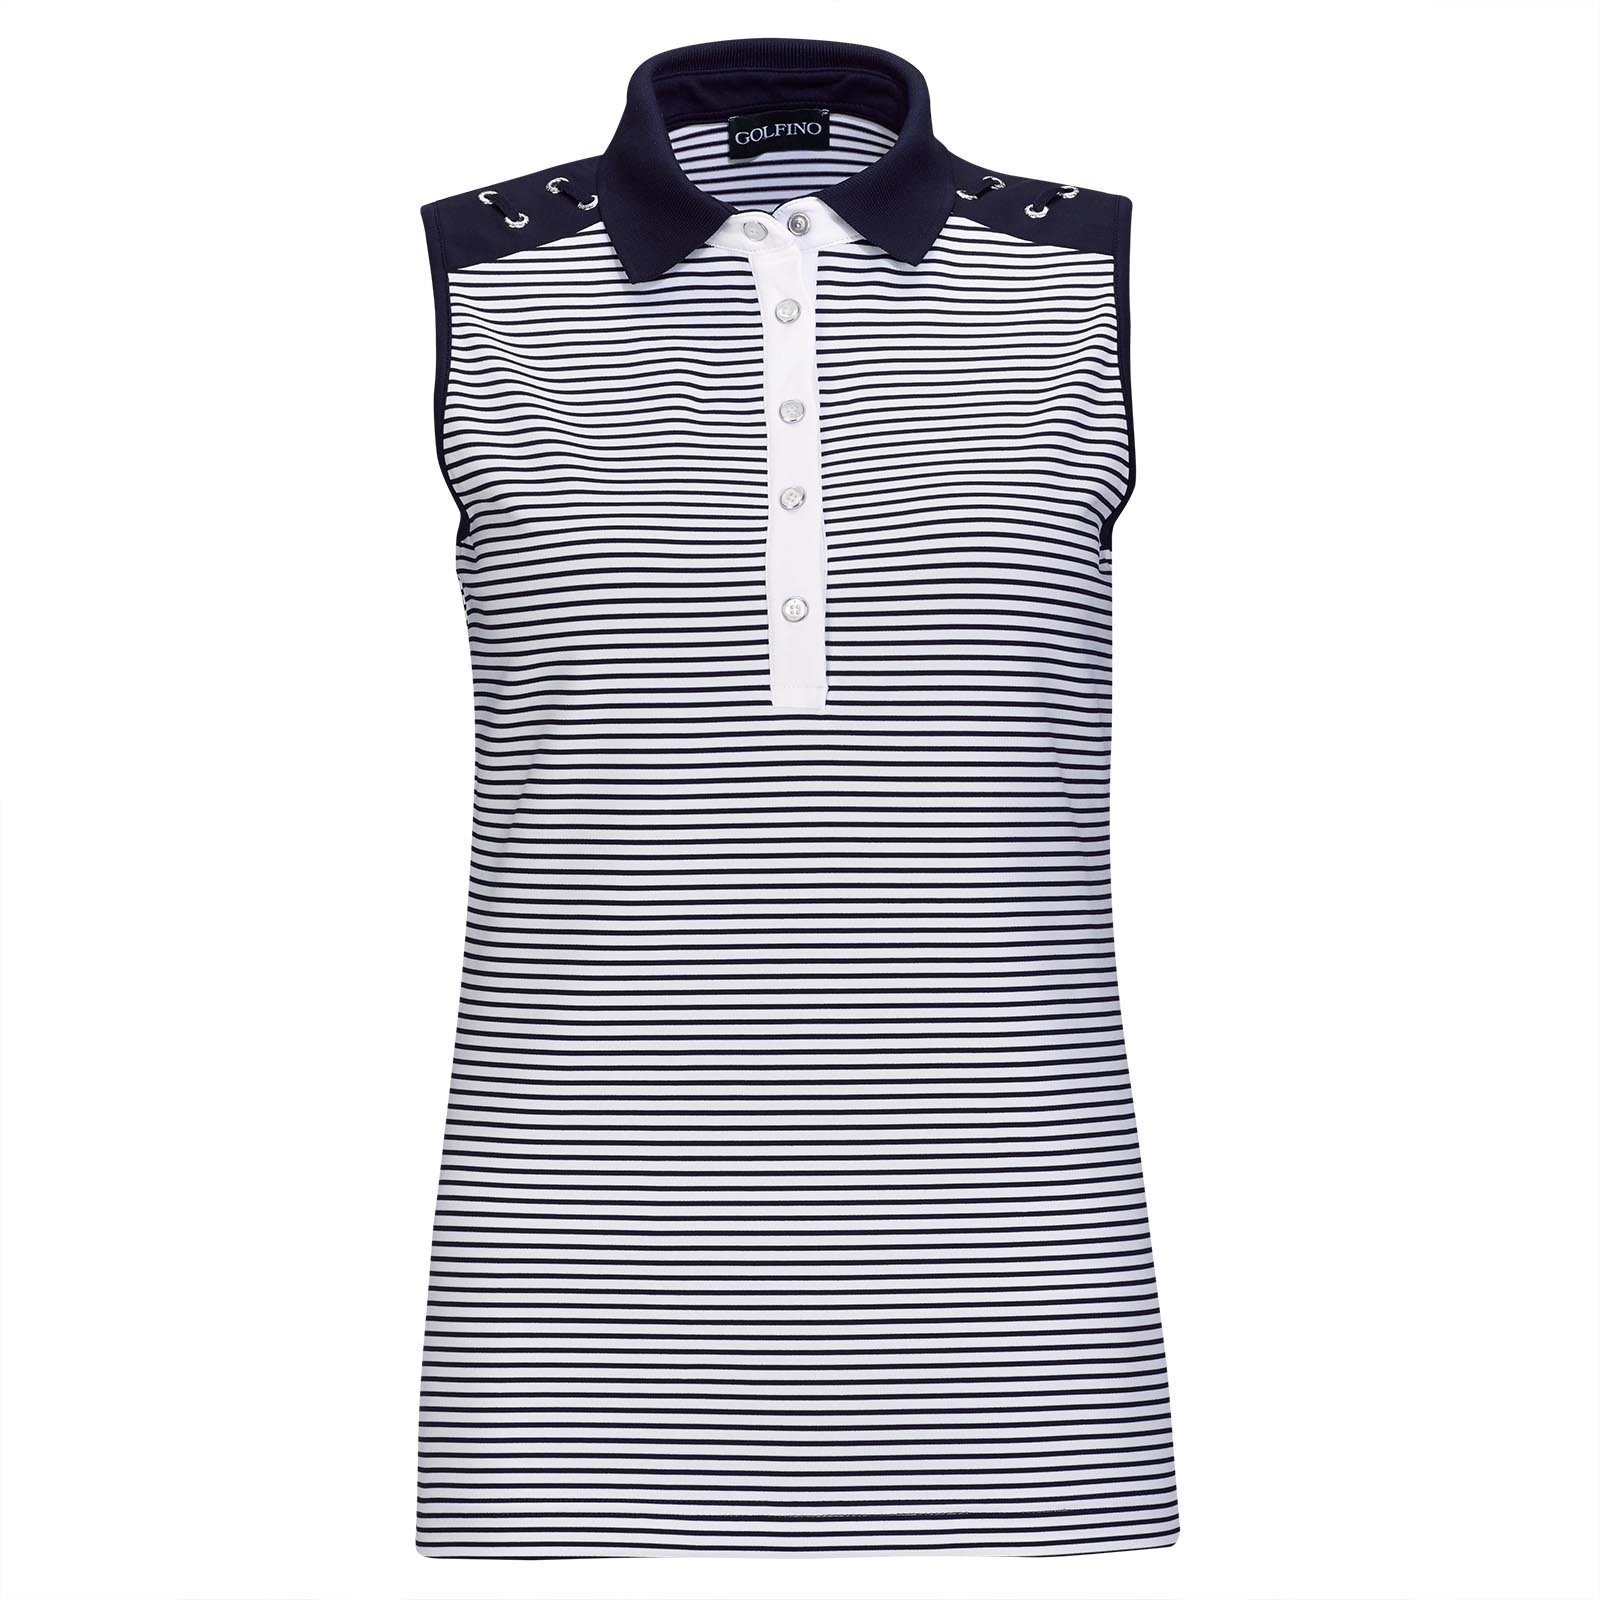 Πουκάμισα Πόλο Golfino Nautical Stripes Sleeveless Womens Polo Shirt Navy 36